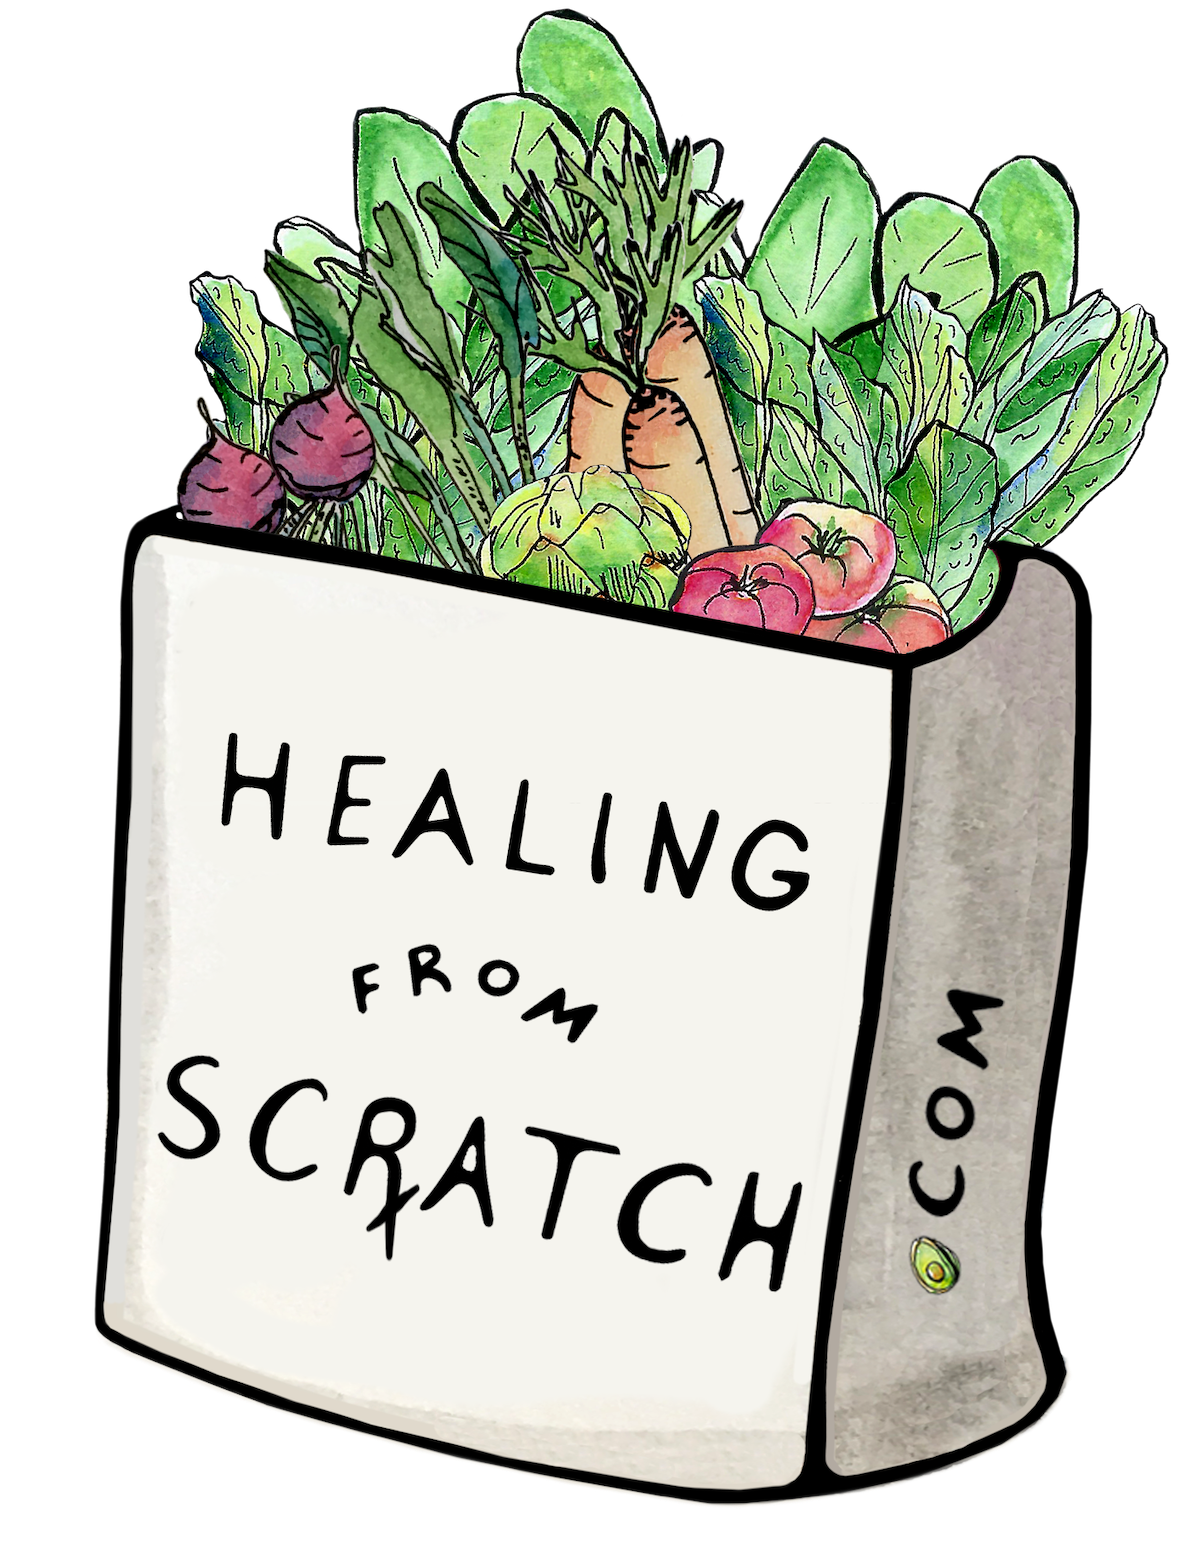 Healing from Scratch